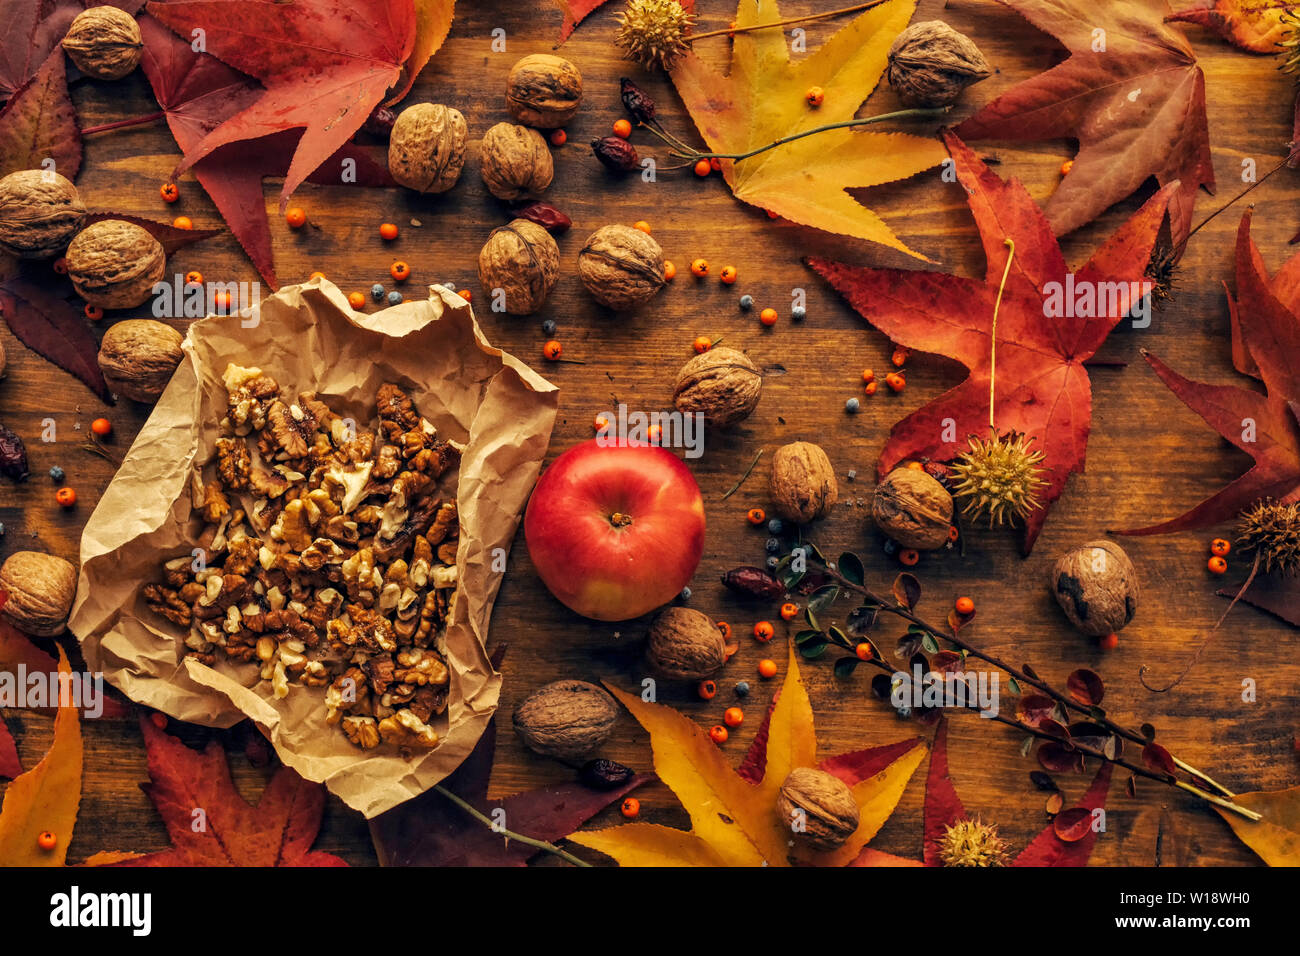 Apple e noce, autunno abbondanza - Sano frutta organica sul tavolo in legno decorata con colorate foglie di acero e bacche, vista dall'alto Foto Stock